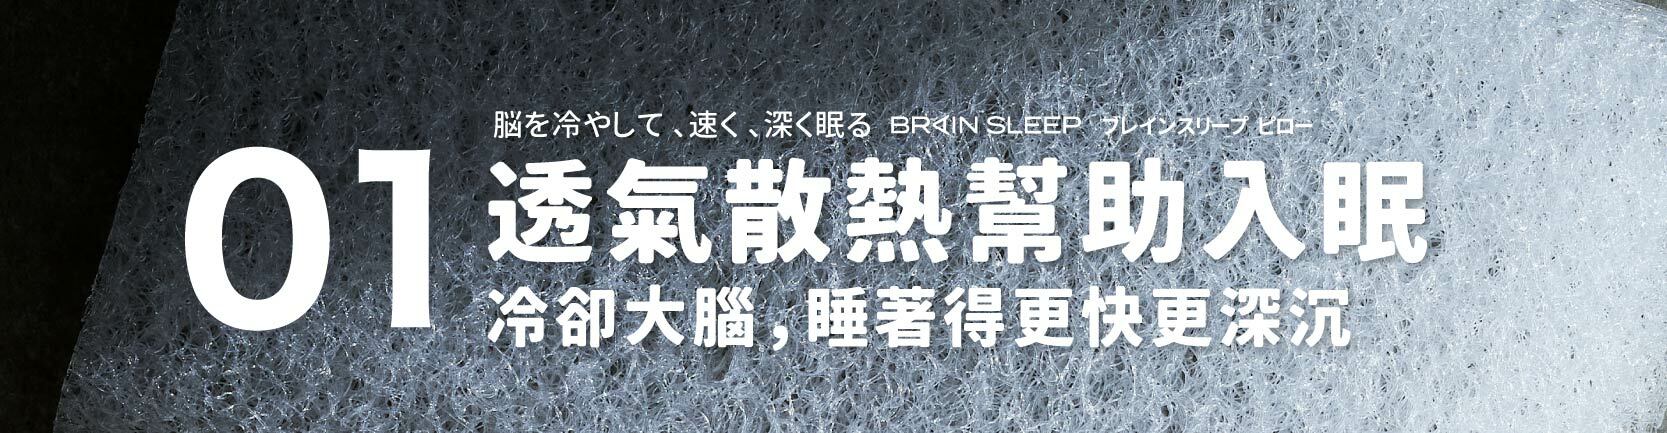 嘖嘖| 日本製BrainSleep 腦眠科技枕｜短時間睡眠也有不可思議的精神 